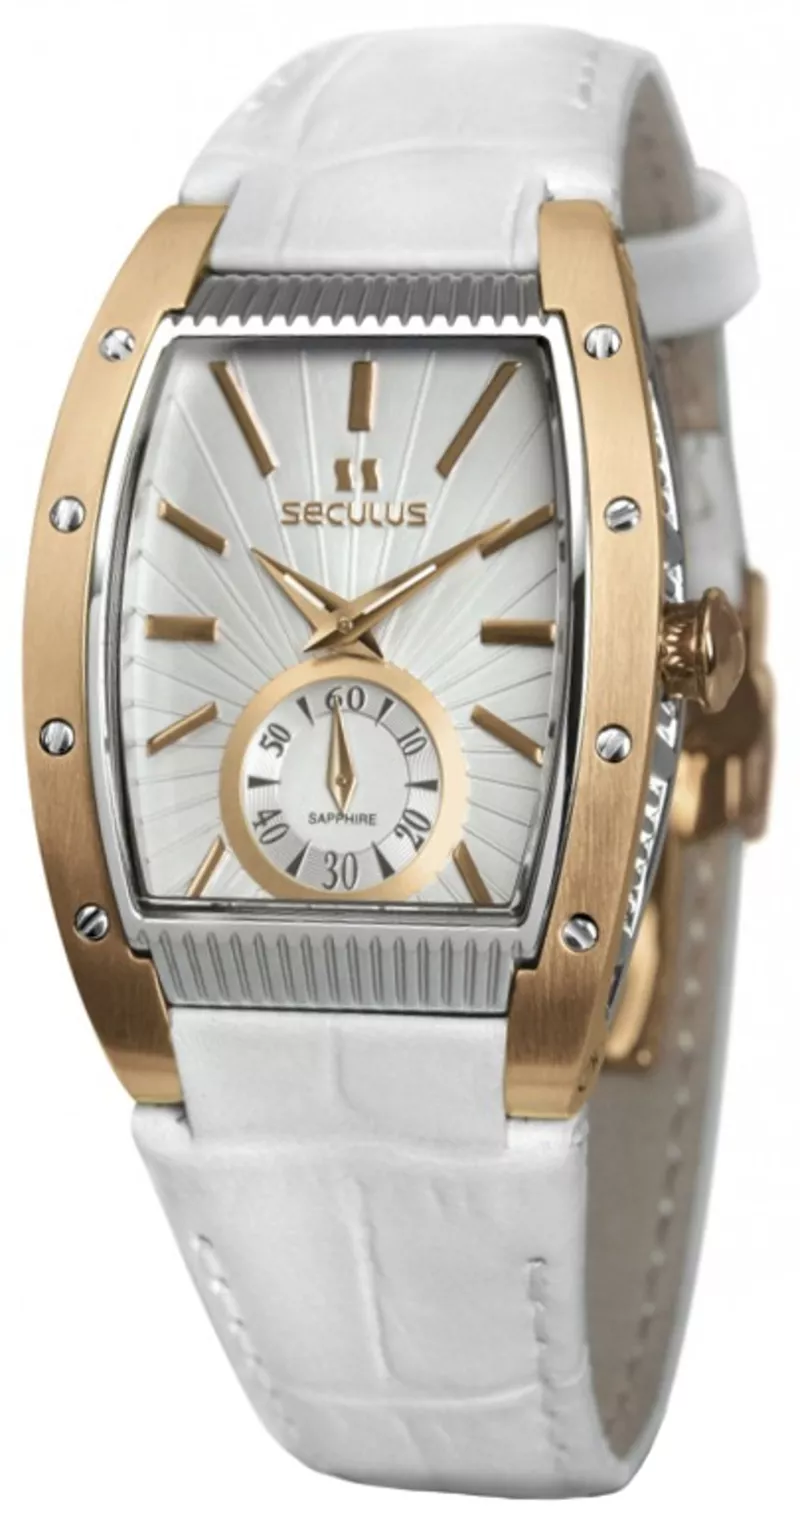 Часы Seculus 1667.2.1069 white, pvd-r, white leather